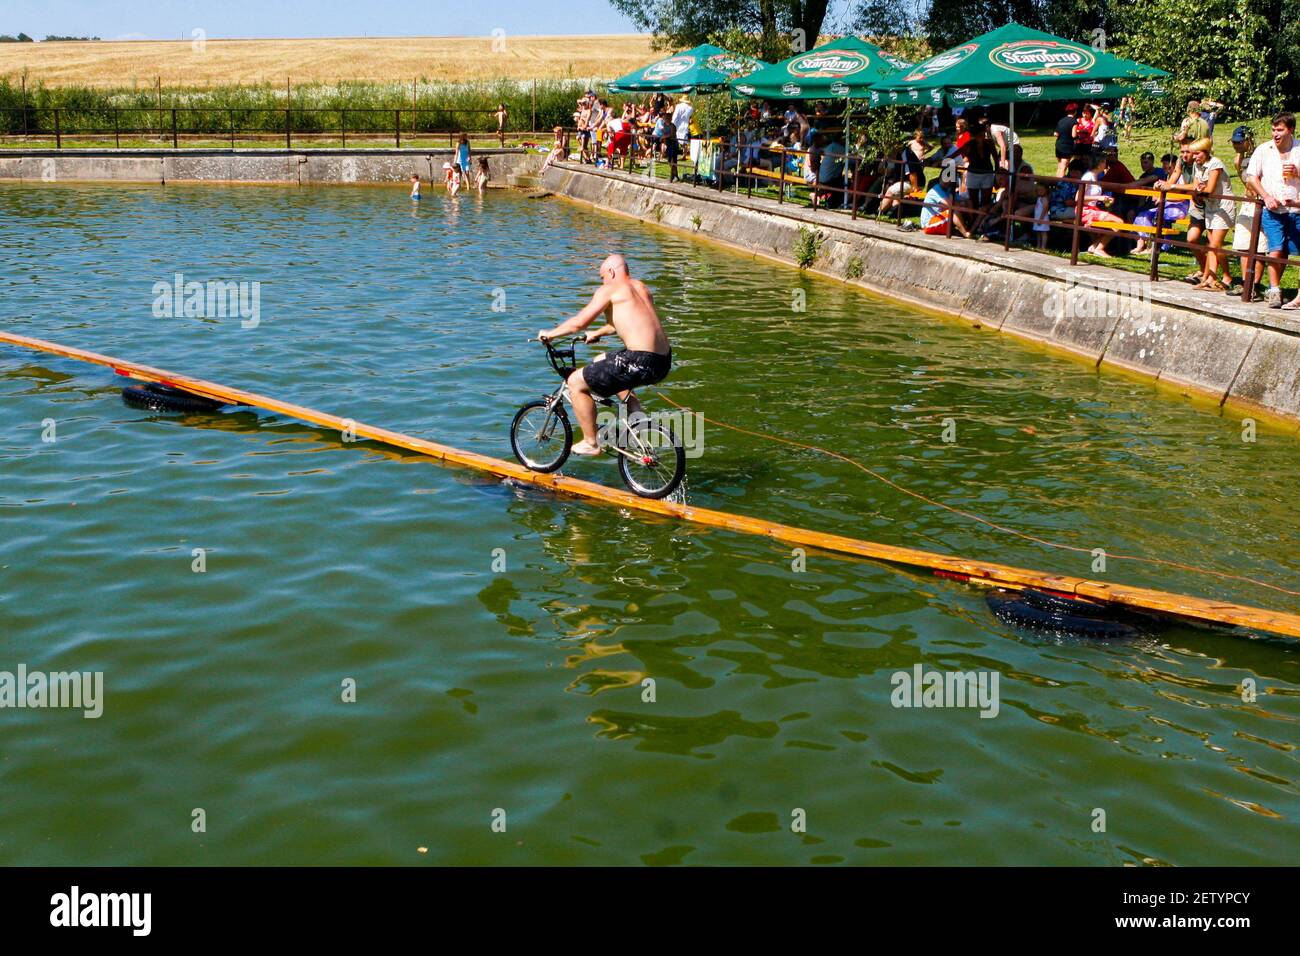 Ungewöhnliche Sportarten, Überquerung des Wasserreservoirs mit dem Fahrrad Tschechische Republik im Sommer ländliches Leben ein jährlicher Wettkampf seltsame Sportfahrräder überqueren das Wasser Stockfoto